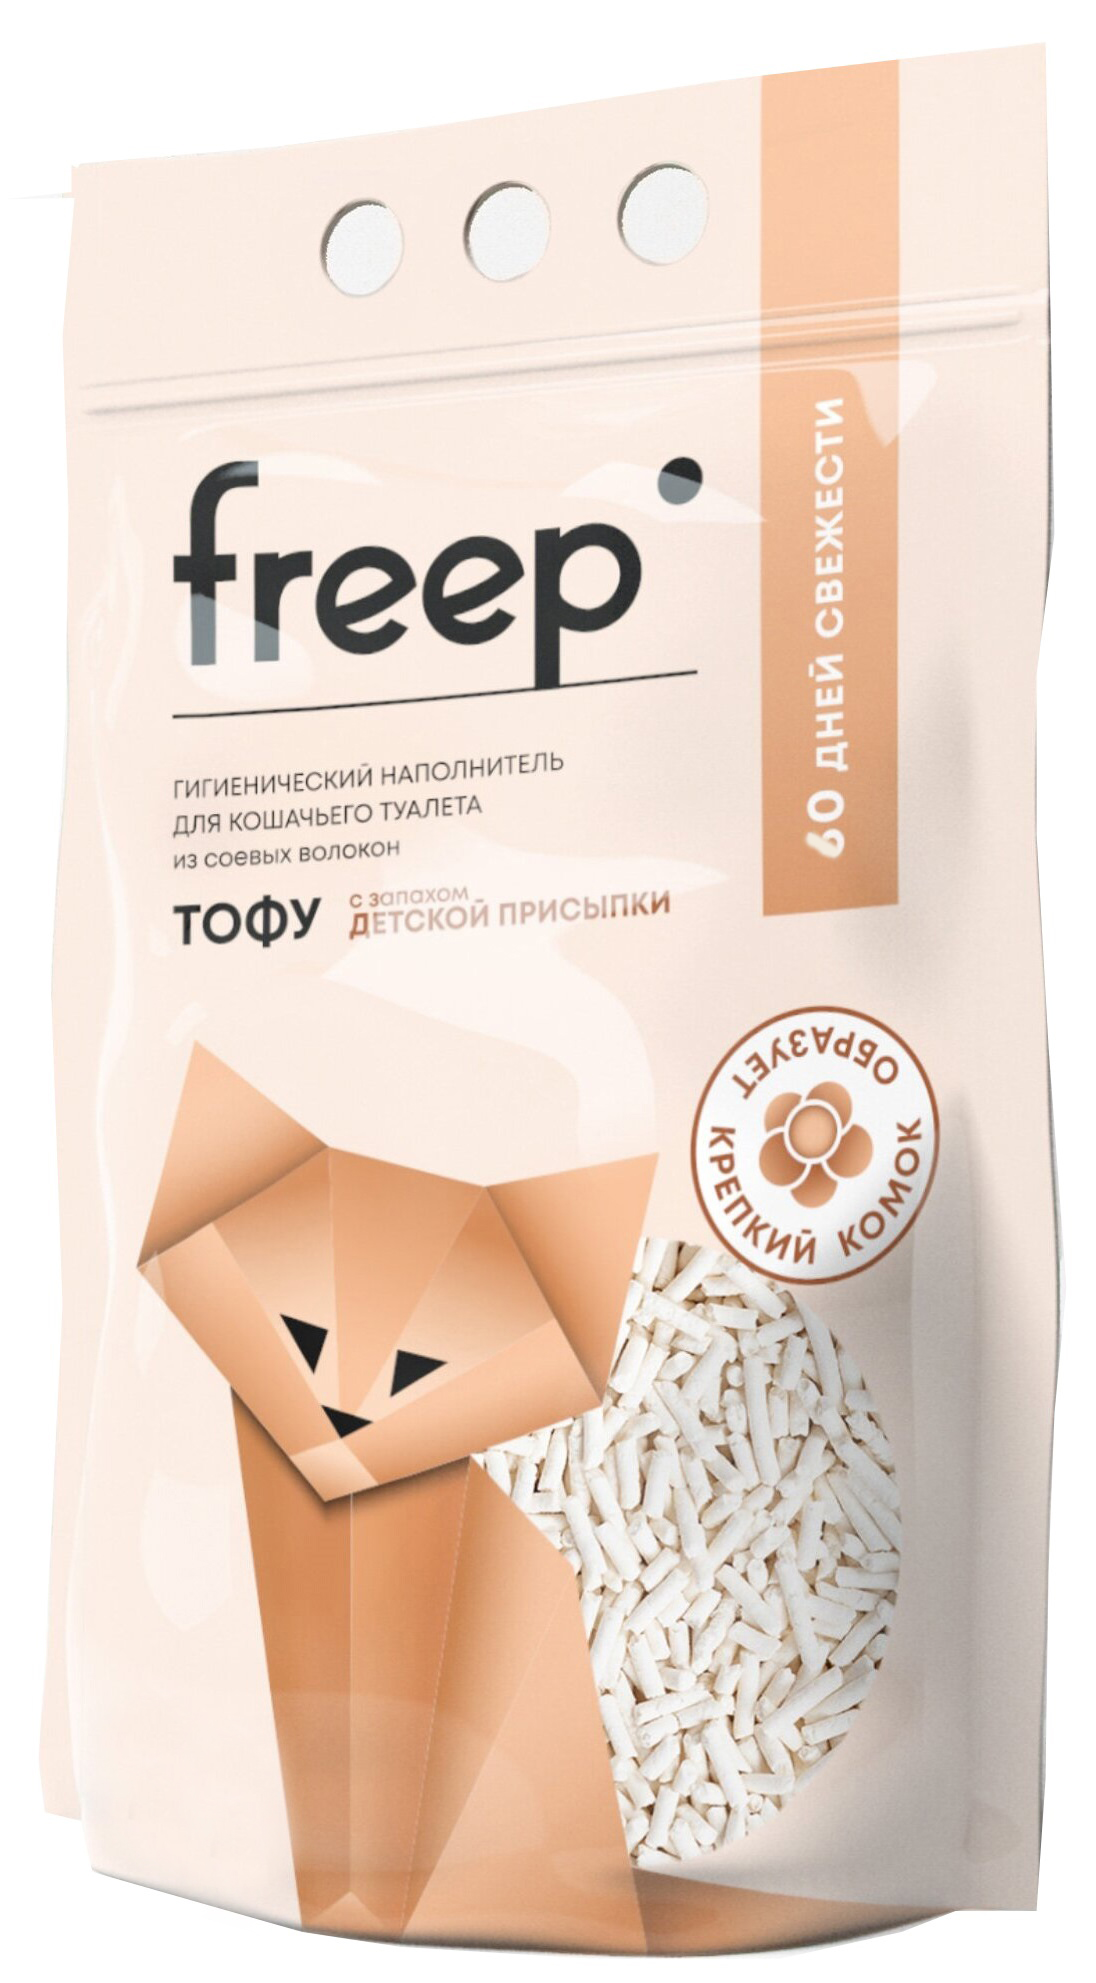 Наполнитель для кошачьего туалета Freep тофу 10 л детская присыпка